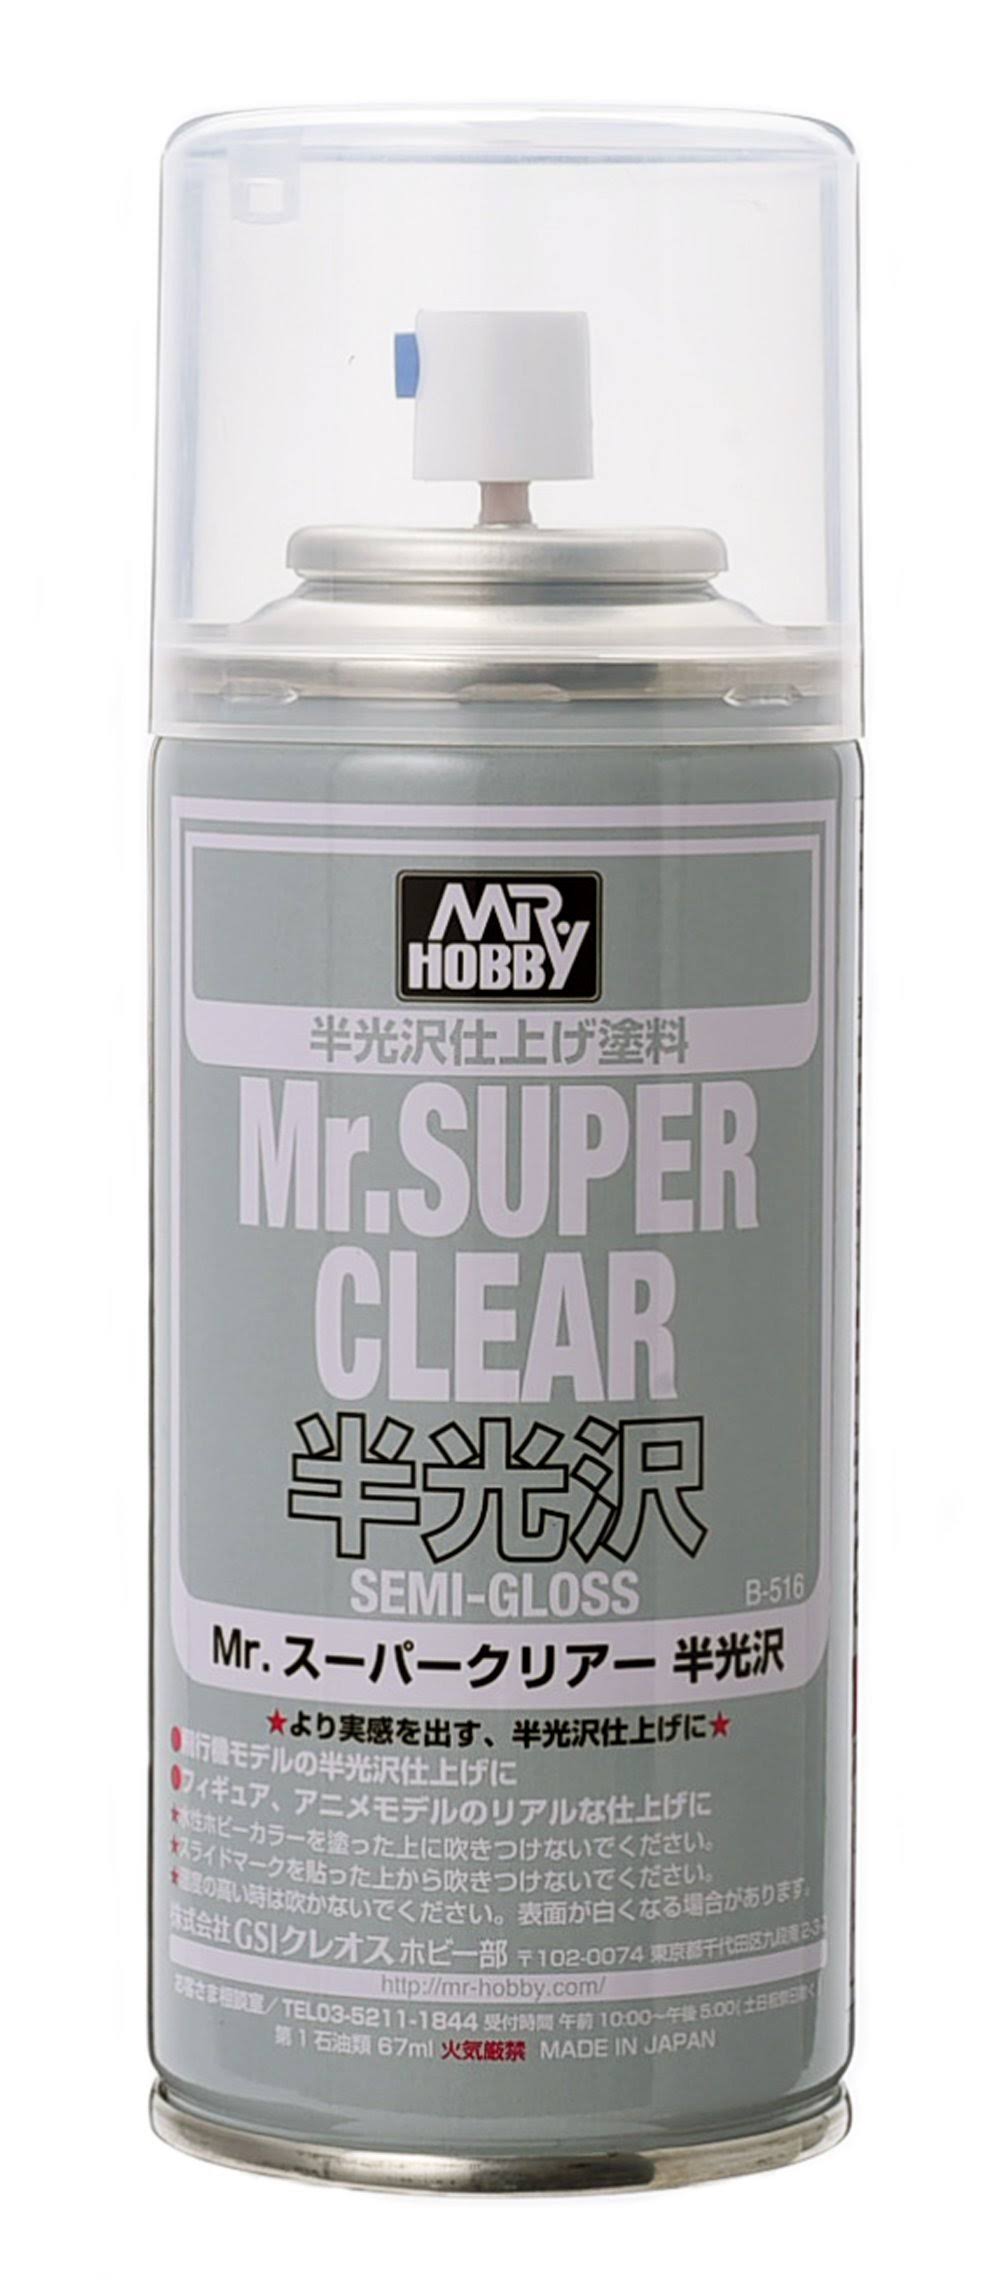 Mr Hobby Mr Super Clear Acrylic Spray - Semi Gloss